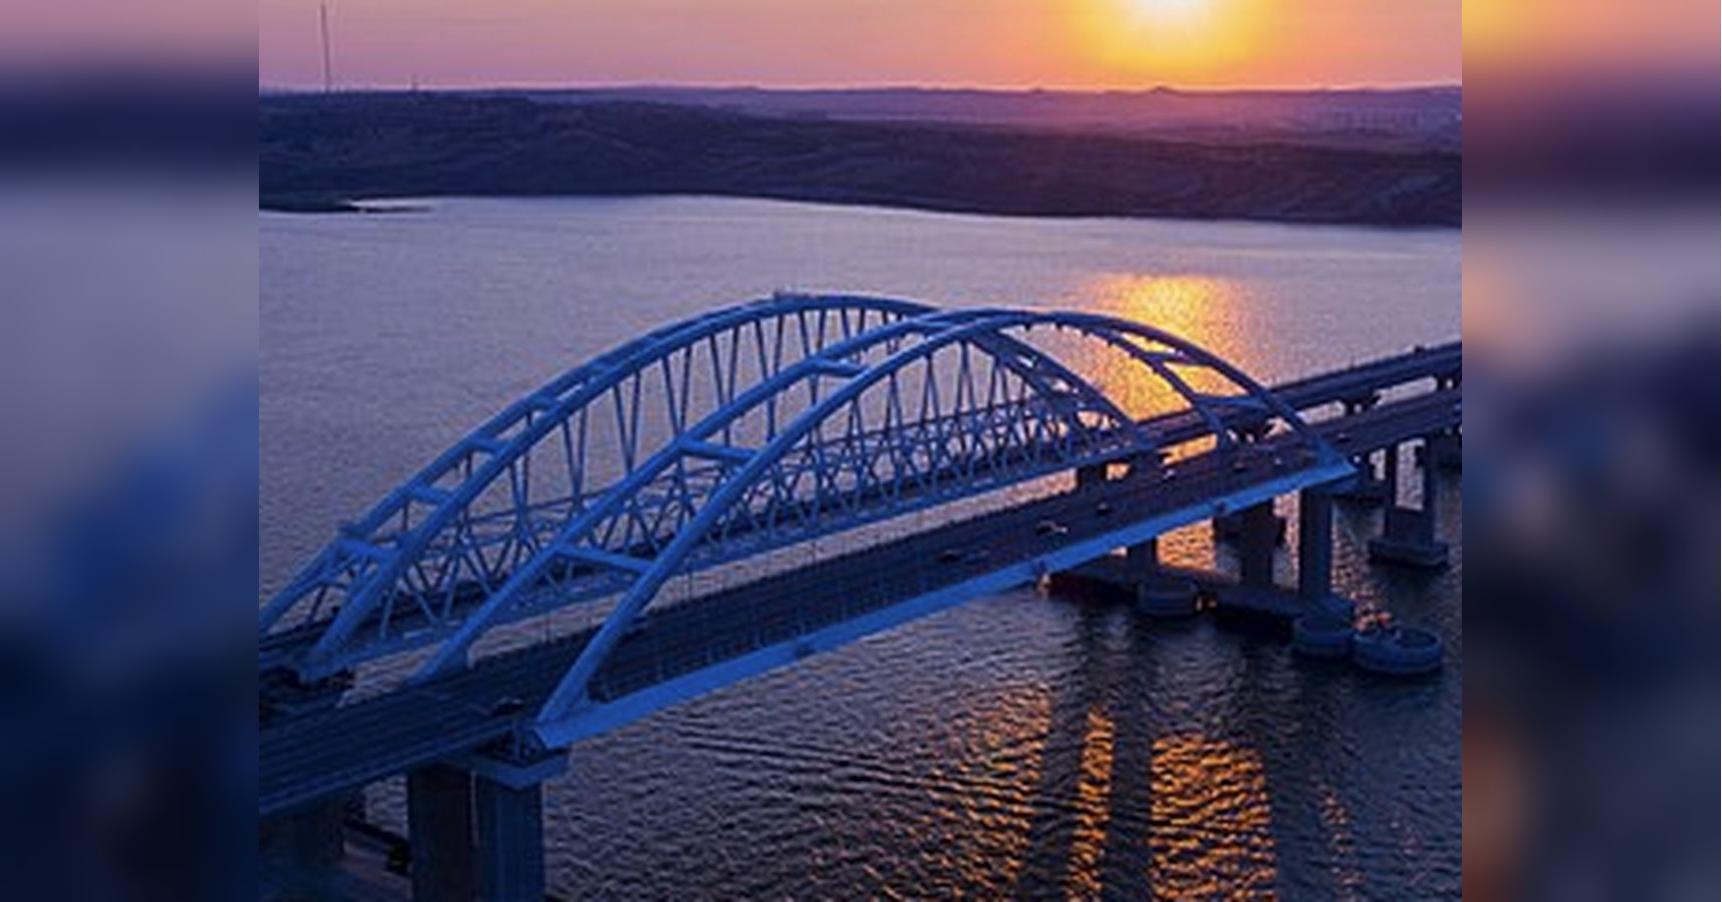 Удар по «вышкам Бойко» был «тренировкой»: эксперт увидел связь между визитом Джонсона и вероятным взрывом Крымского моста